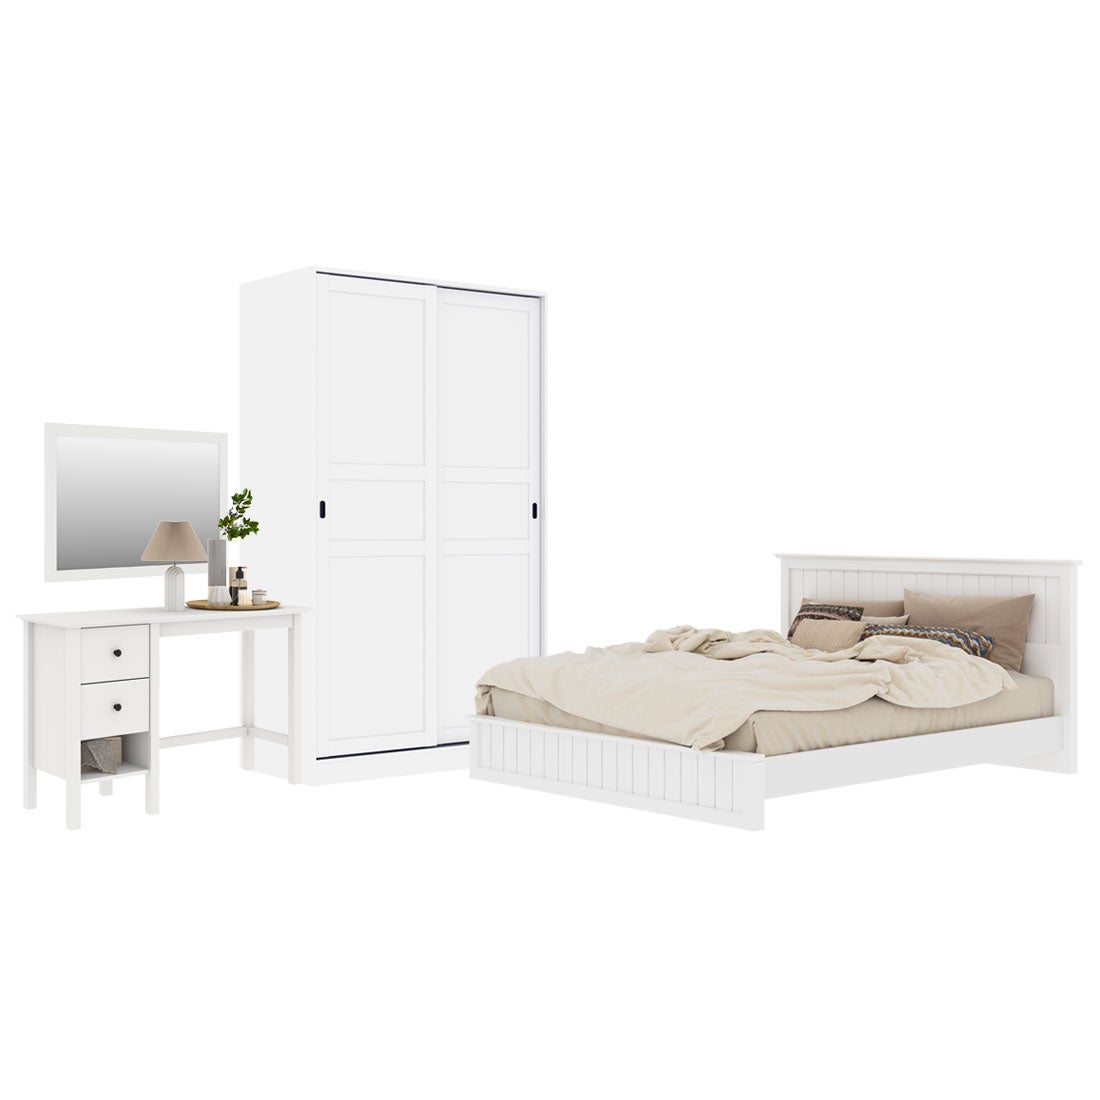 ชุดห้องนอน ขนาด 5 ฟุต รุ่น Moneta & ตู้บานเเลื่อน 120 ซม. สีขาว01